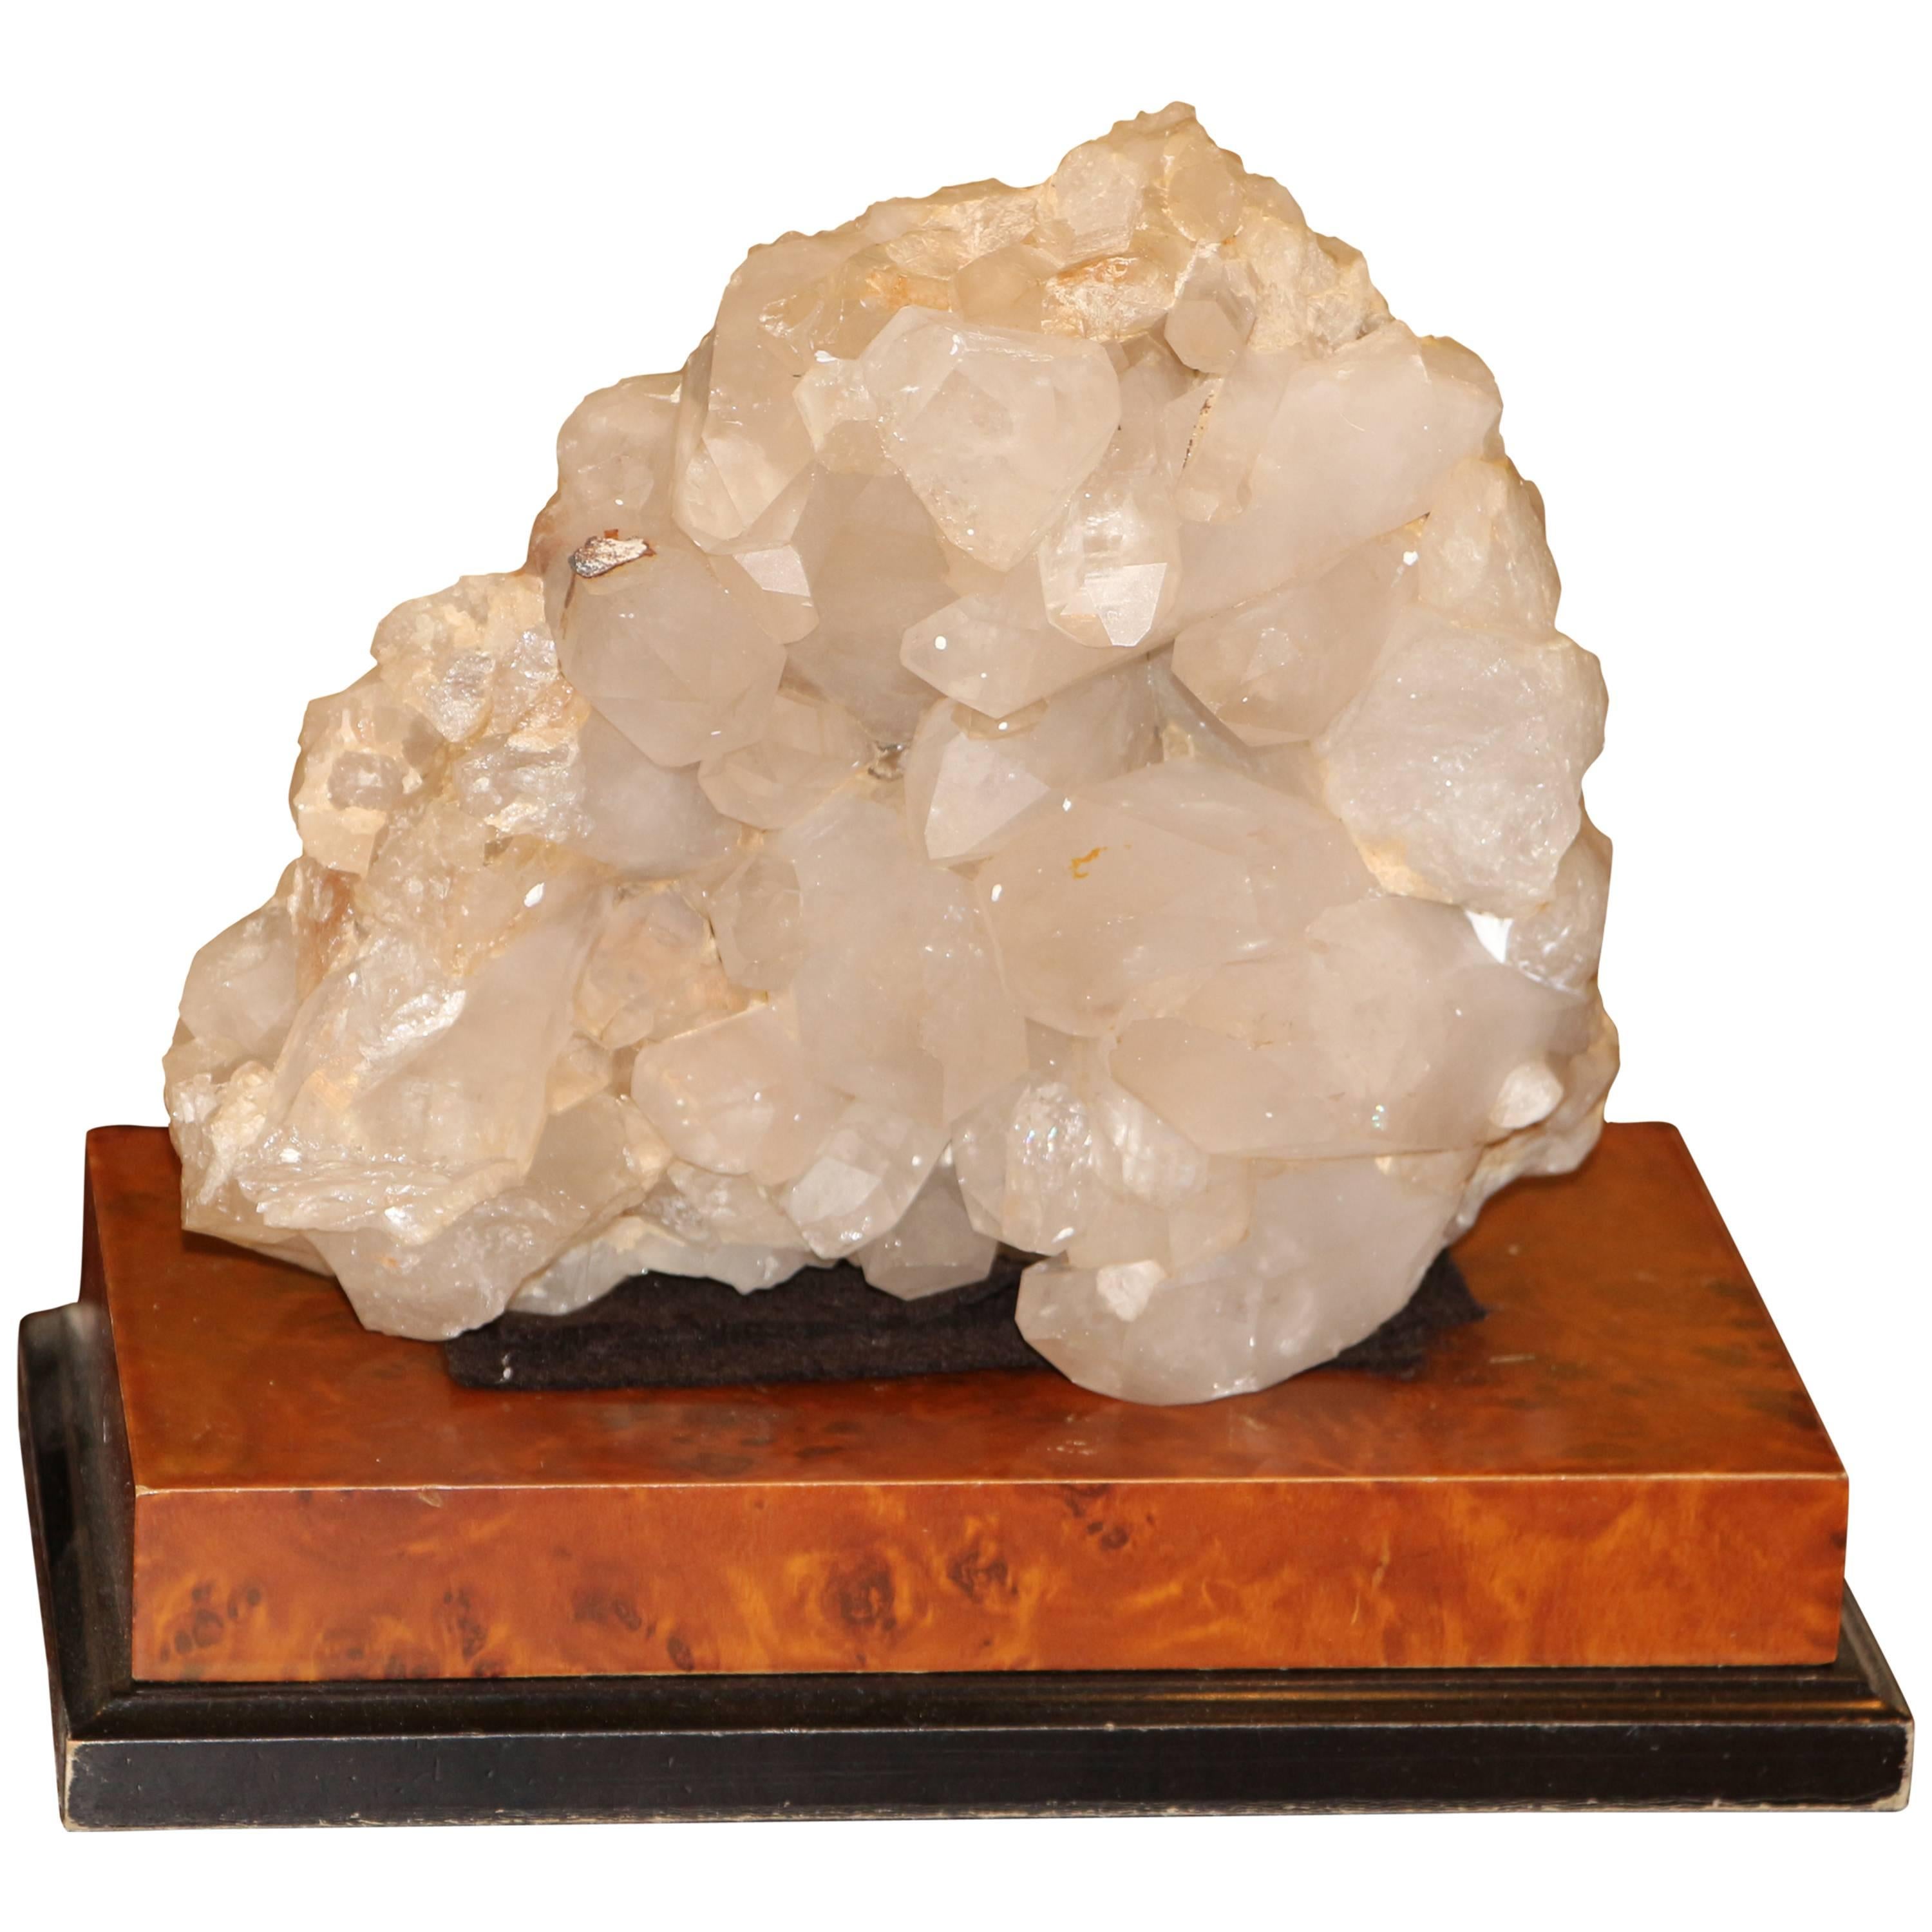 Großes Quarzkristall-Exemplar auf einem separaten, mit Leder bedeckten Holzsockel